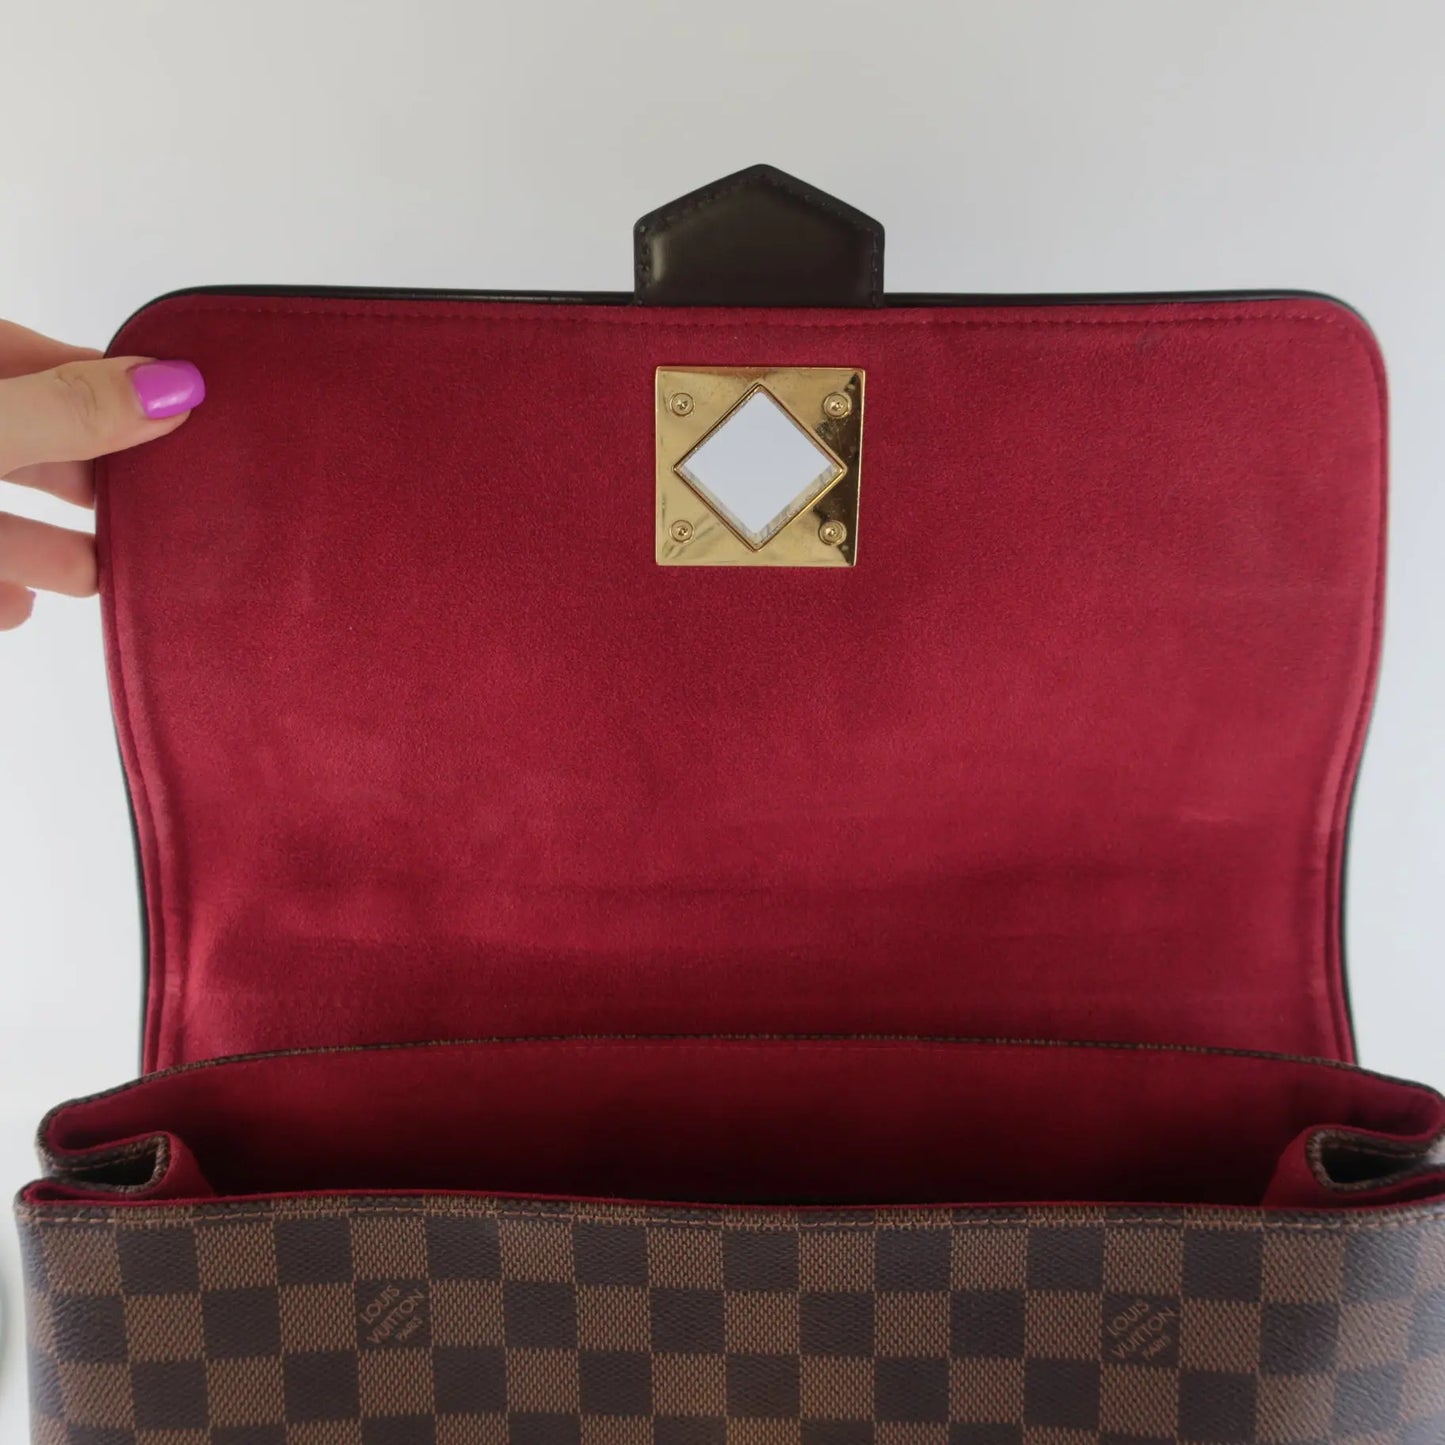 Louis Vuitton Damier Ebene Canvas Bergamo MM Bag – The Luxury Lady